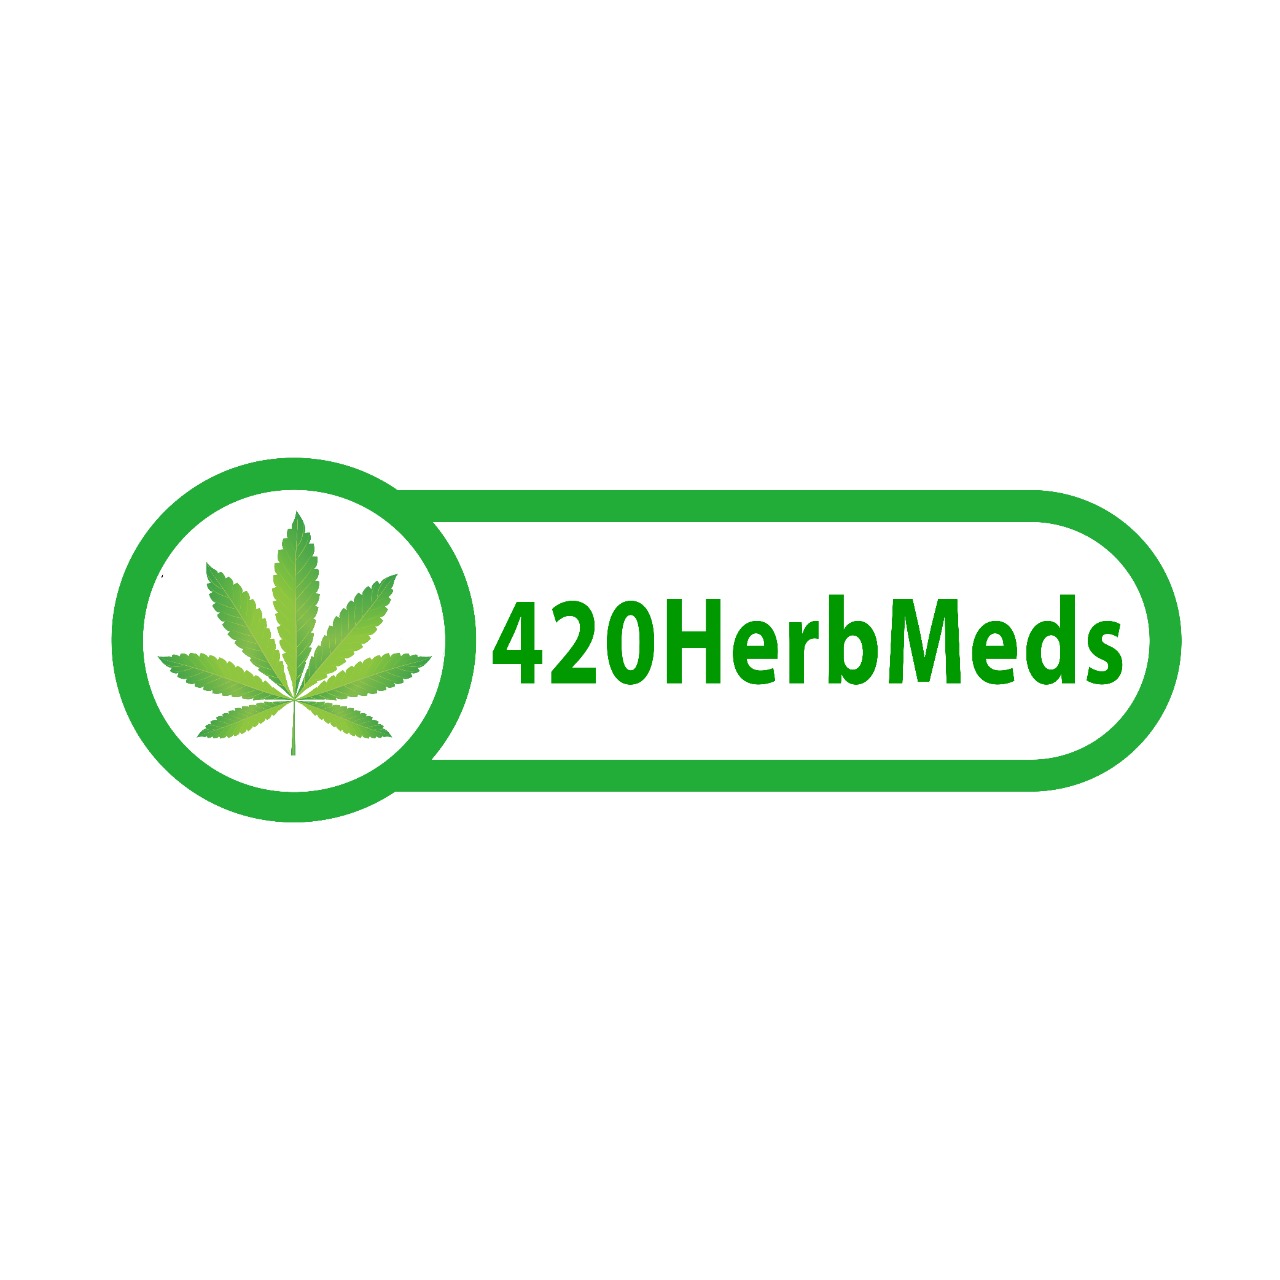 420HerbMeds